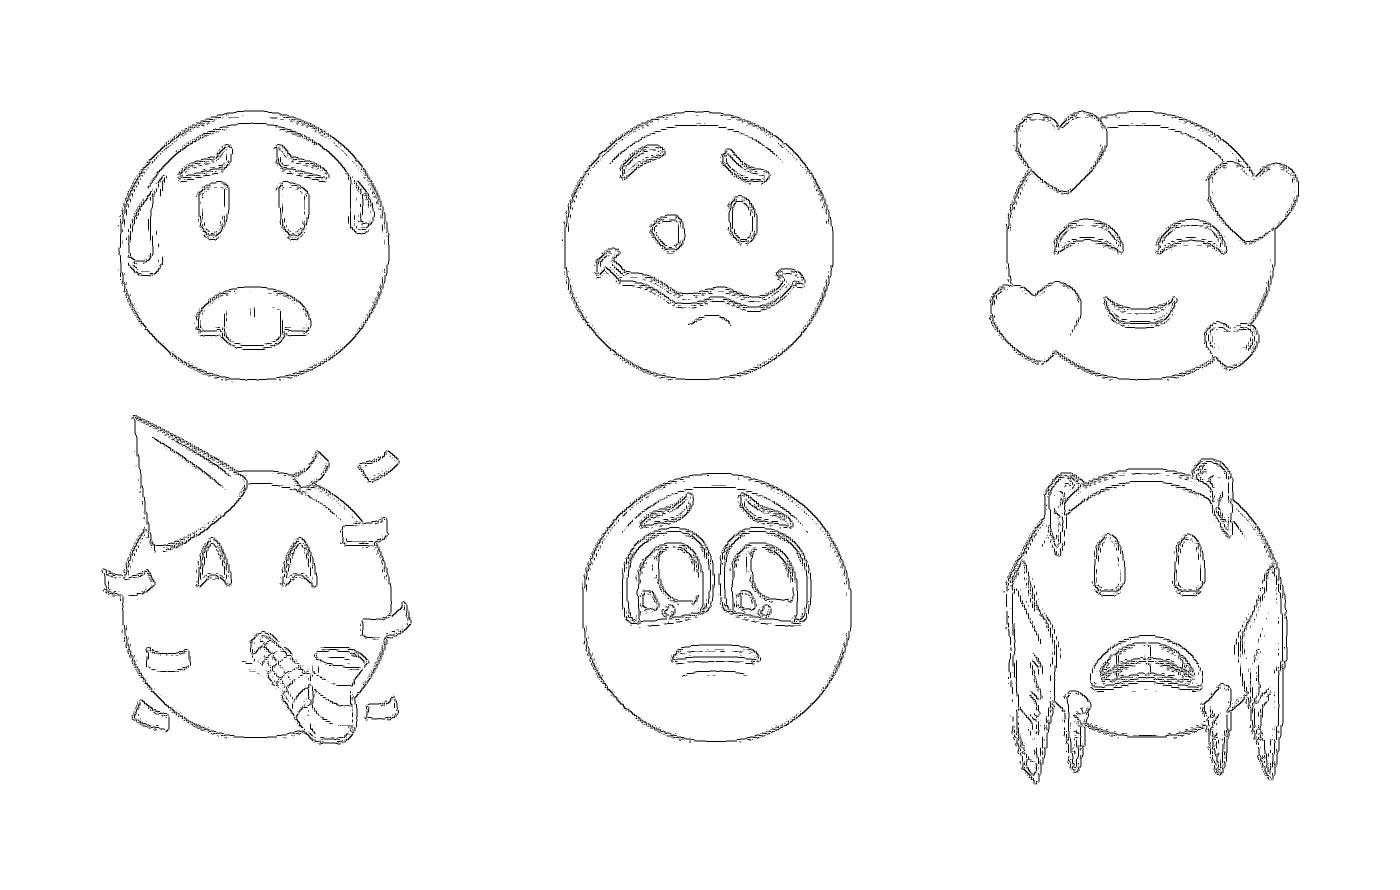  Серия рисунков различных лиц с различными выражениями 